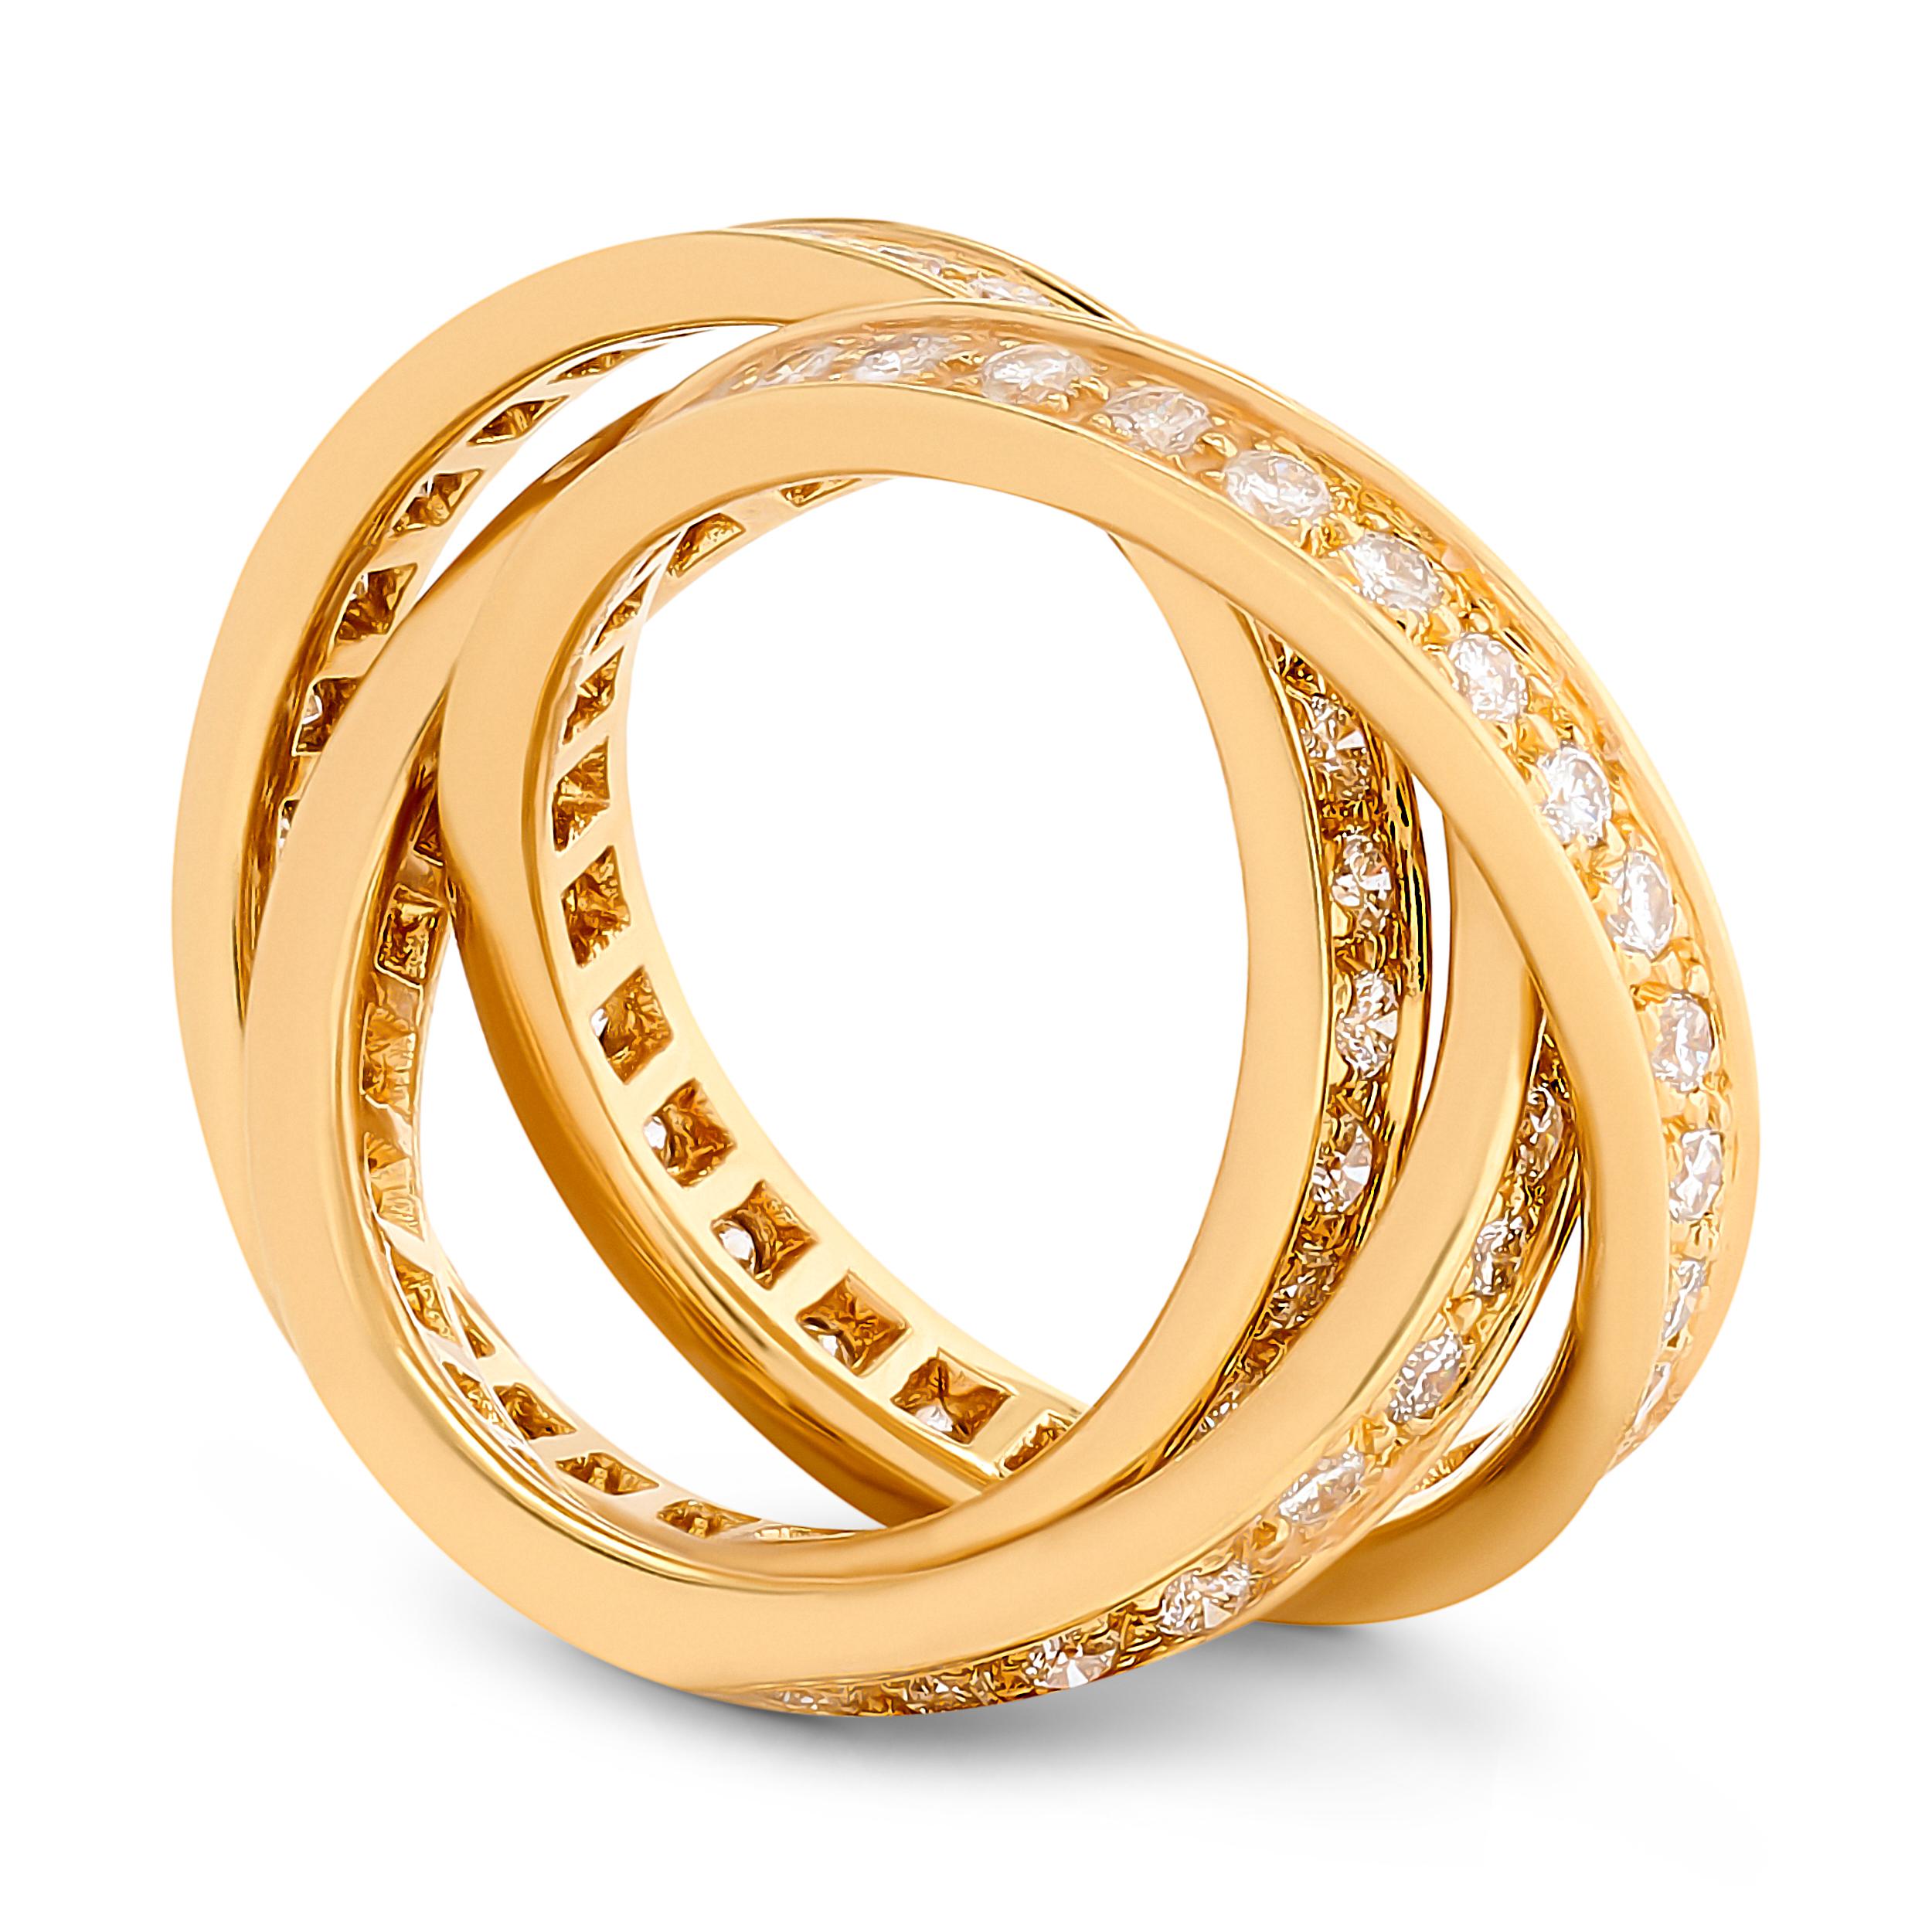 La bague trinité en or jaune 18 carats diamants de Cartier présente une danse harmonieuse de diamants et d'or qui capture l'élégance à chaque tour de roulis.

Cette bague Cartier présente 3 anneaux entrelacés sertis d'environ 1,55 carats de diamants